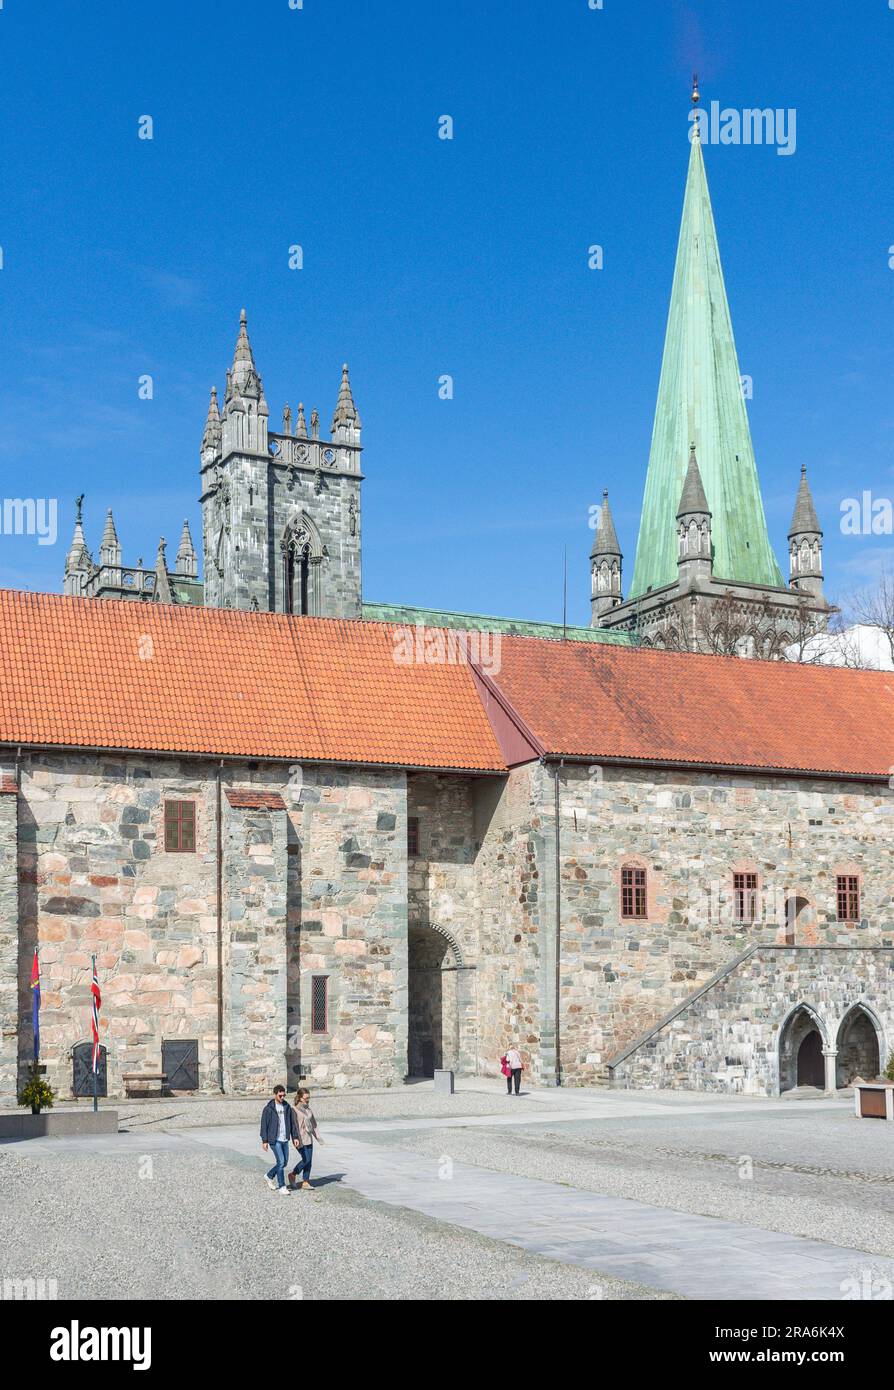 Cathédrale de Nidaros (Nidarosdomen) du Palais de l'Archevêque (Erkebispegården), Kongsgårdsgata, Trondheim, comté de Trøndelag, Norvège Banque D'Images